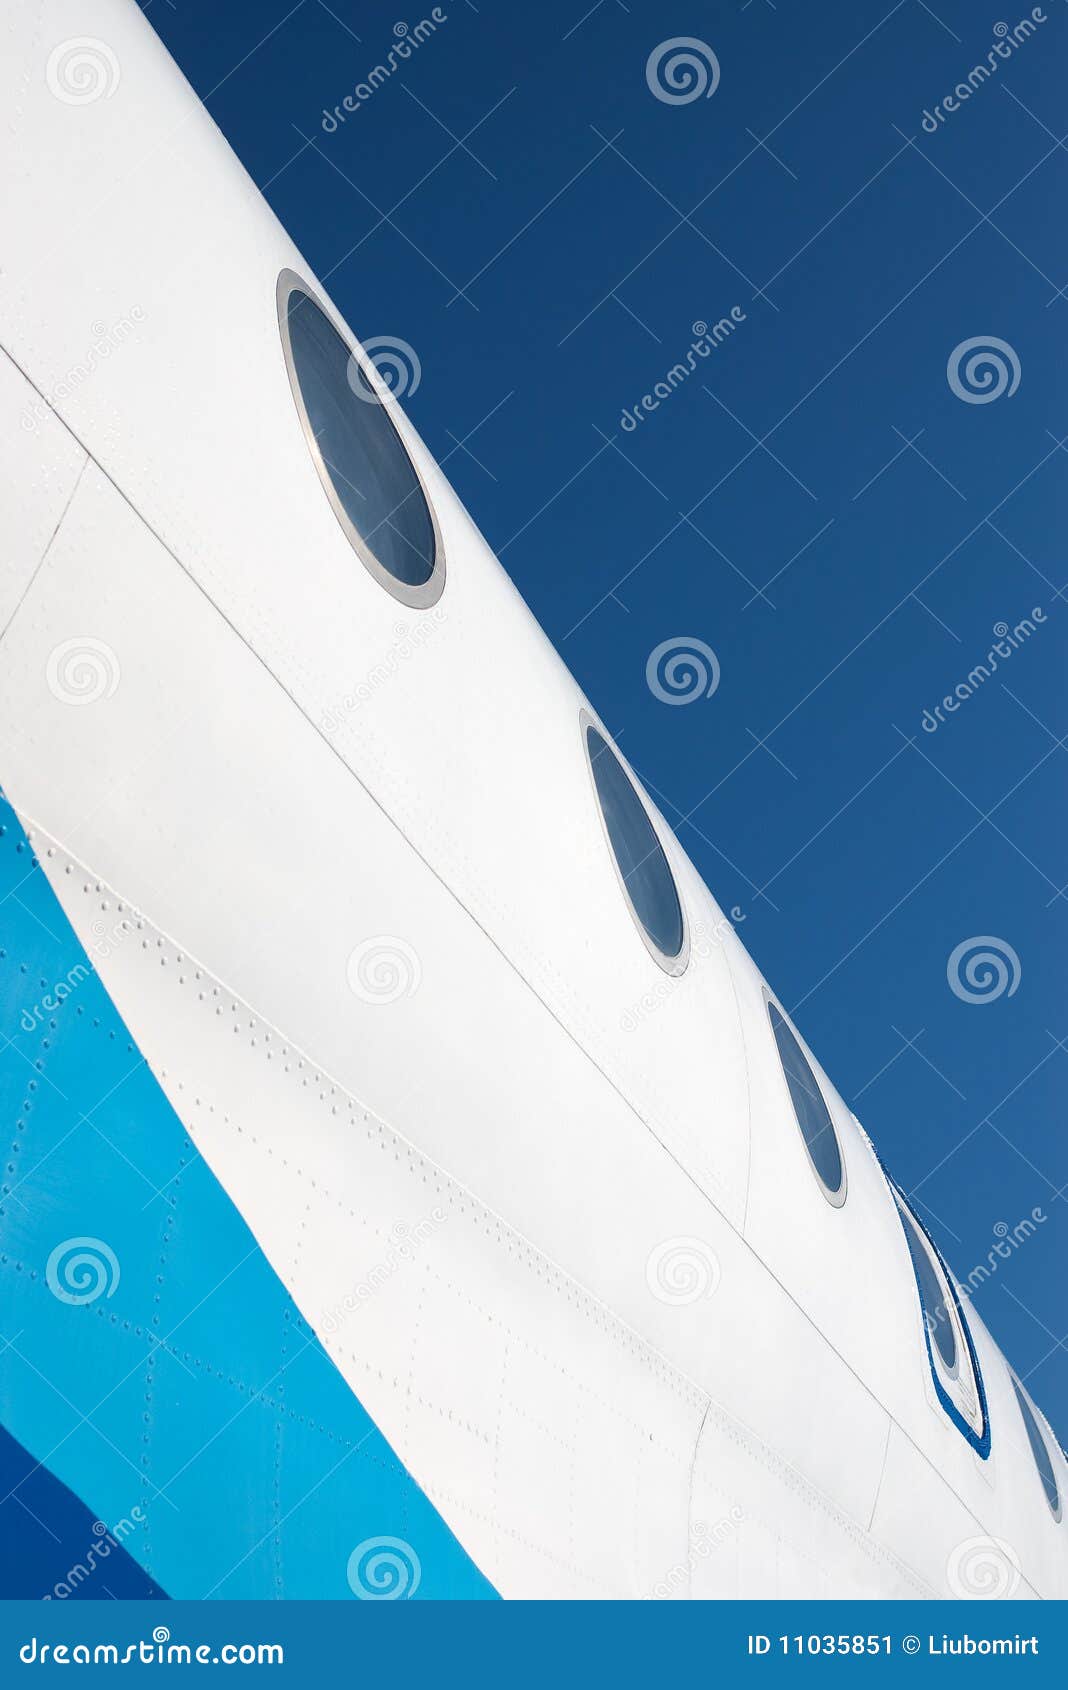 airplane fuselage with illuminators